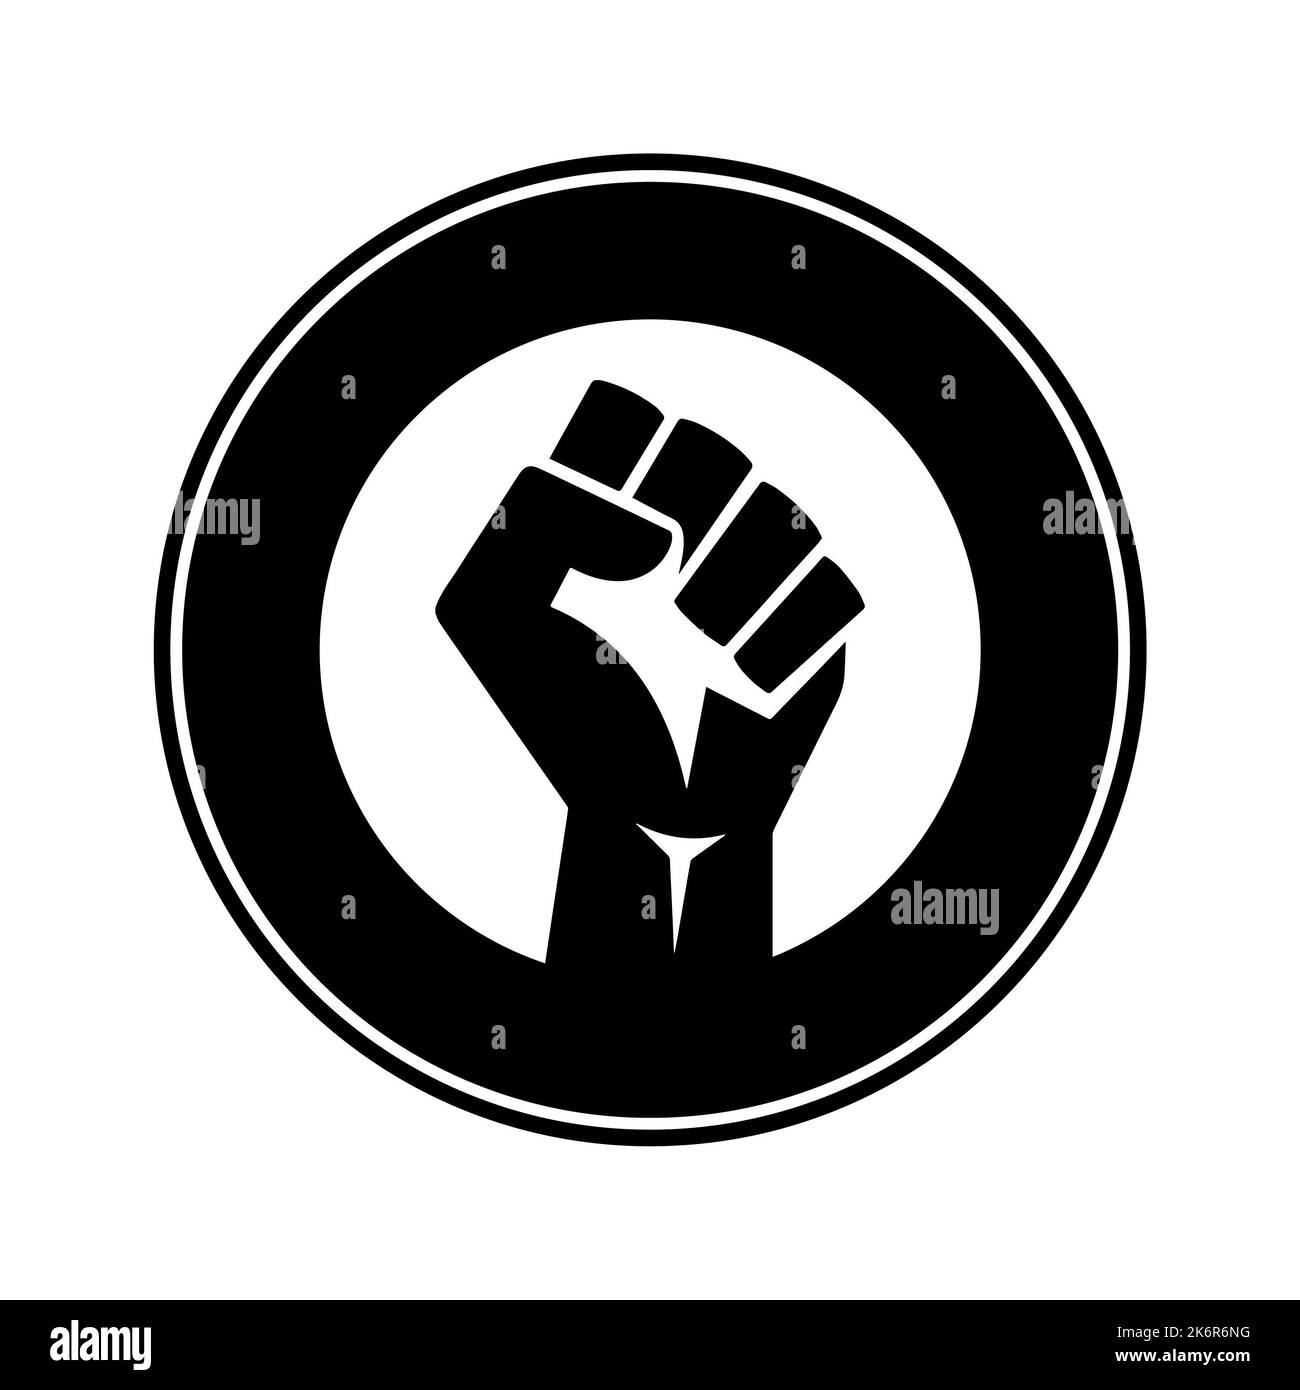 Poing humain noir dans un cercle noir sur fond blanc. Le pouvoir noir, la protestation contre le racisme, le mouvement pour l'égalité. Banque D'Images